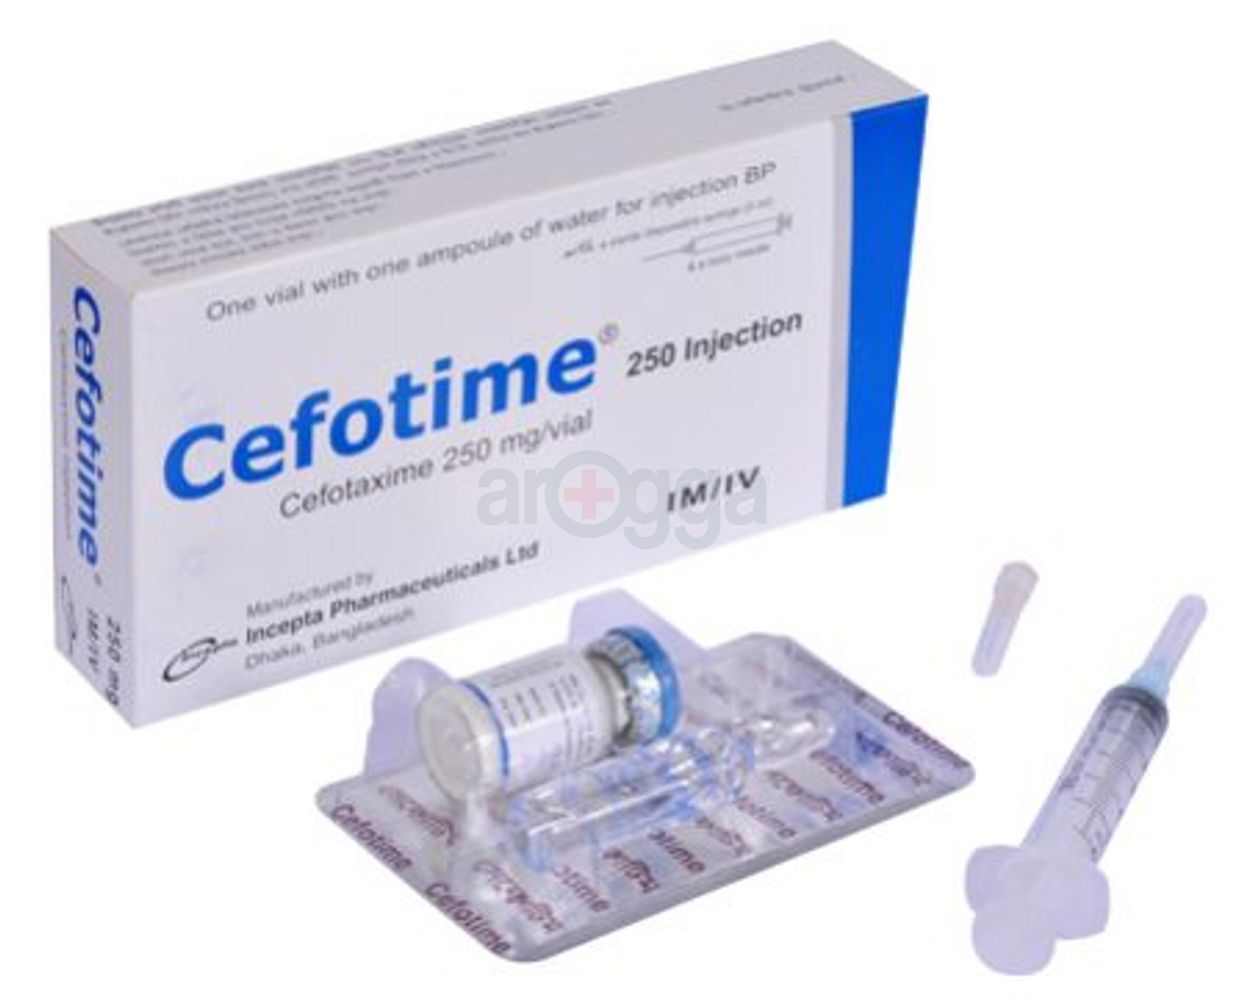 Cefotime 250 IV/IM